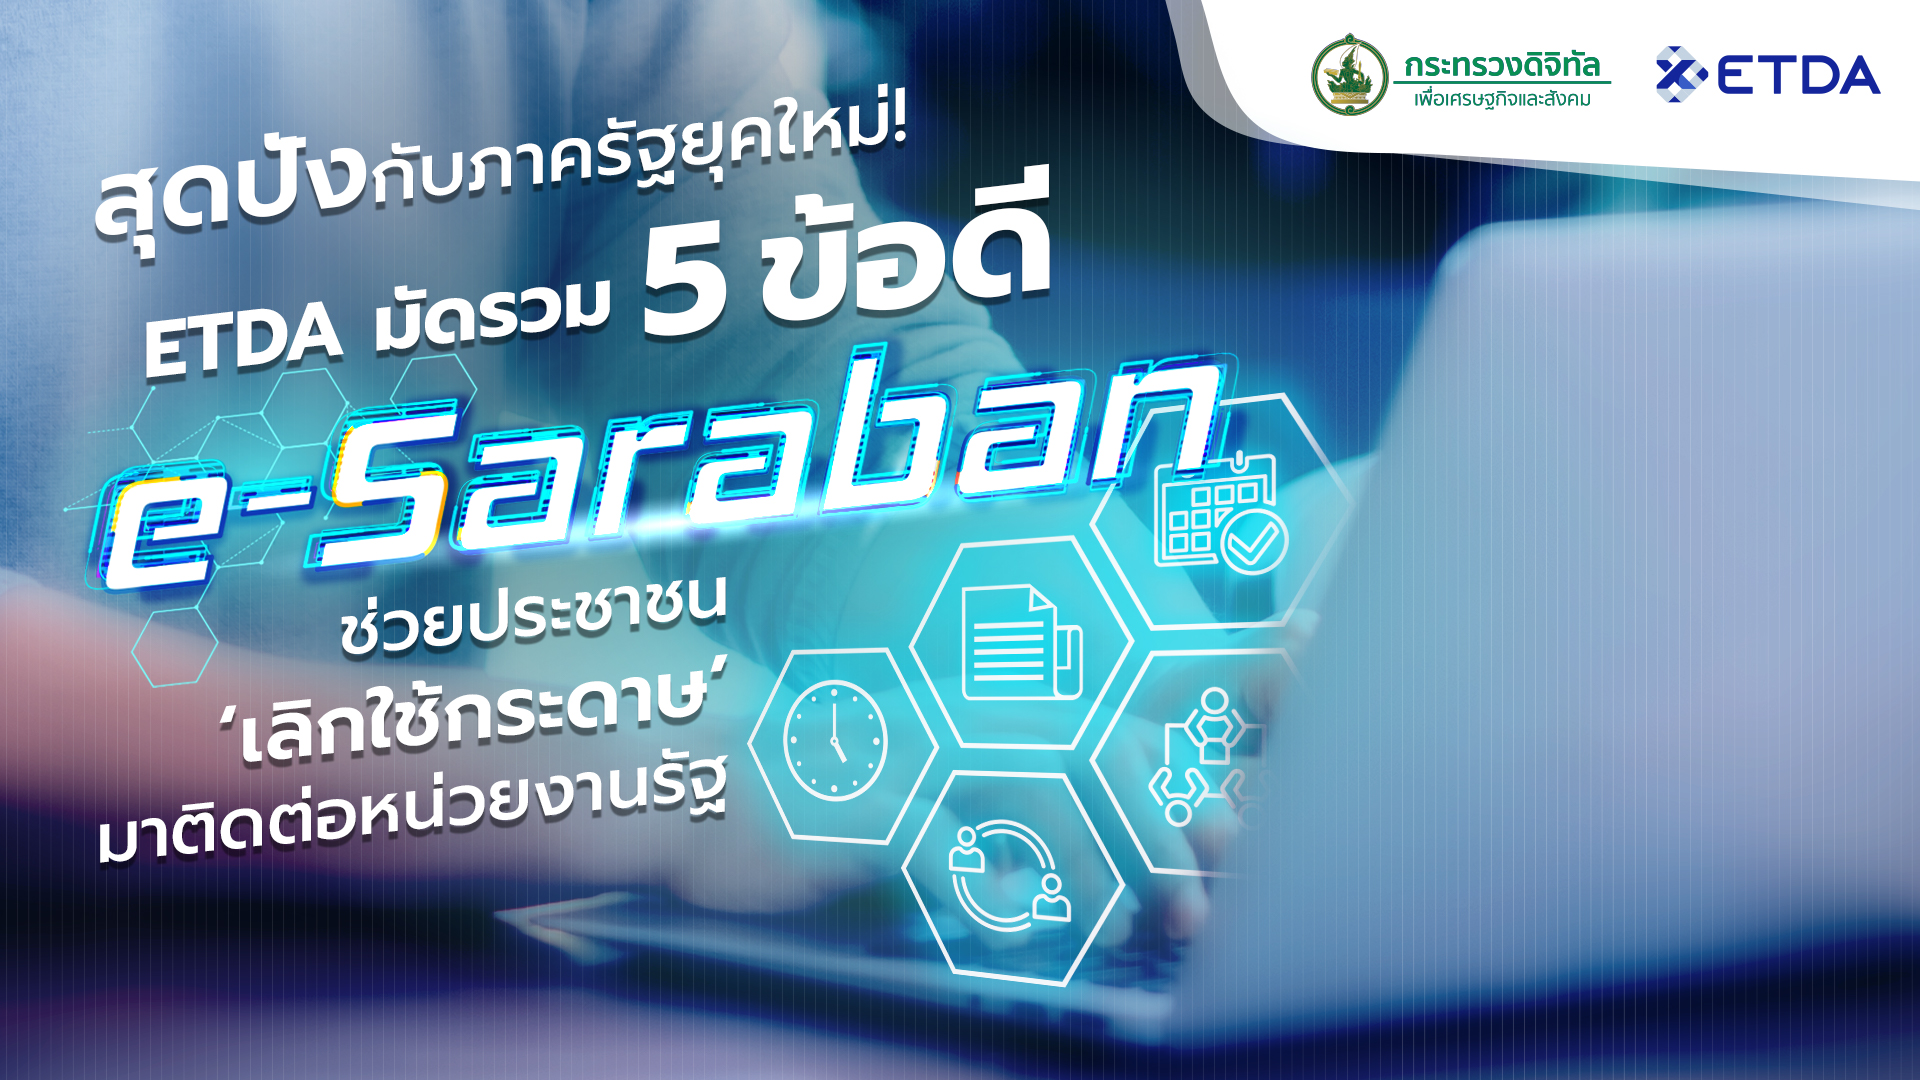 สุดปังกับภาครัฐยุคใหม่! ETDA มัดรวม 5 ข้อดี e-Saraban ช่วยประชาชน ‘เลิกใช้กระดาษ’ มาติดต่อหน่วยงานรั